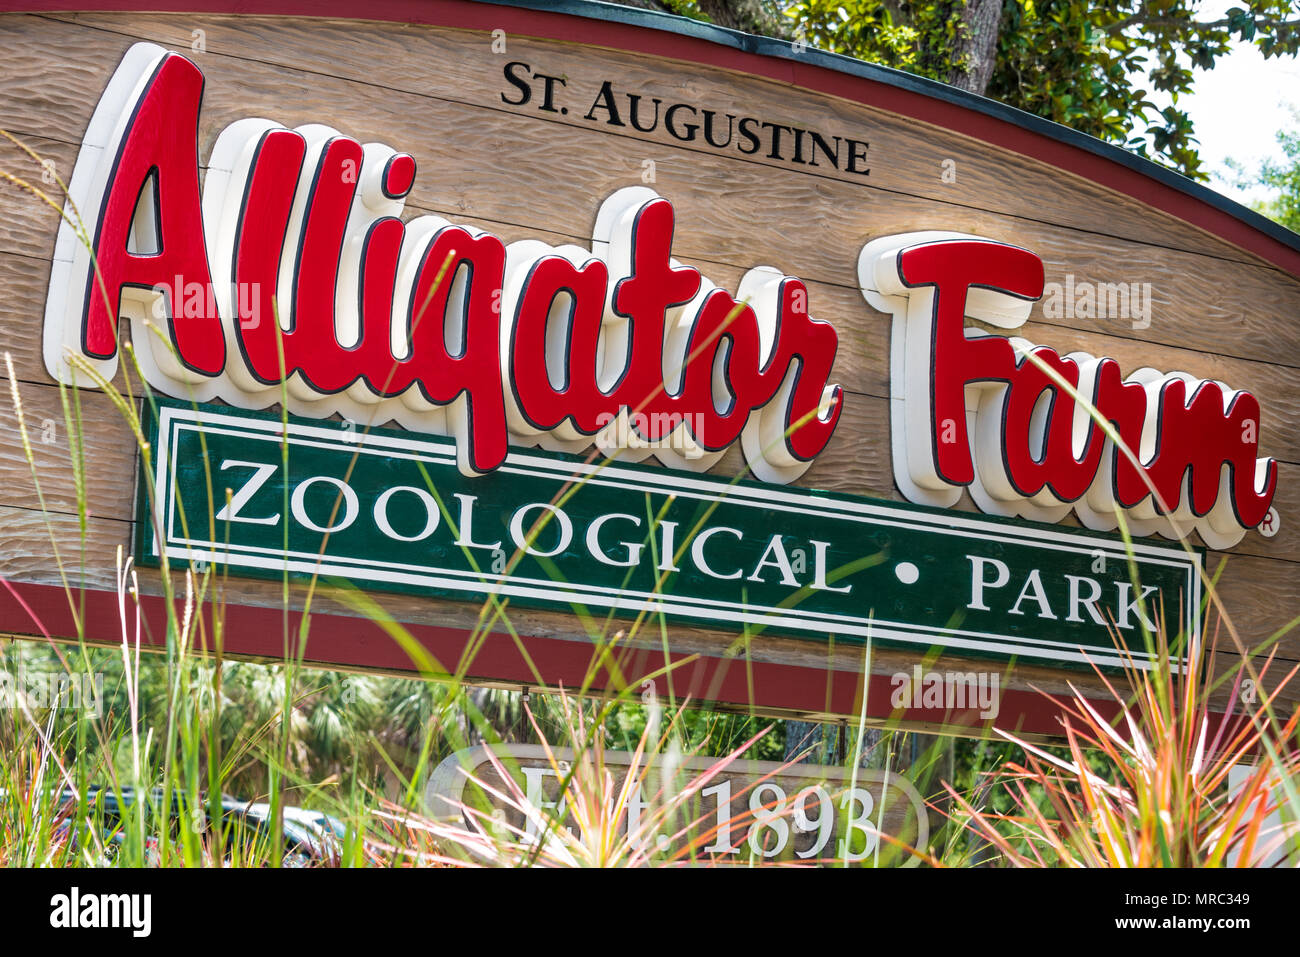 Sant'Agostino Alligator Farm Zoological Park su Anastasia Isola di Sant'Agostino, Florida è una popolare attrazione turistica stabilito nel 1893. Foto Stock